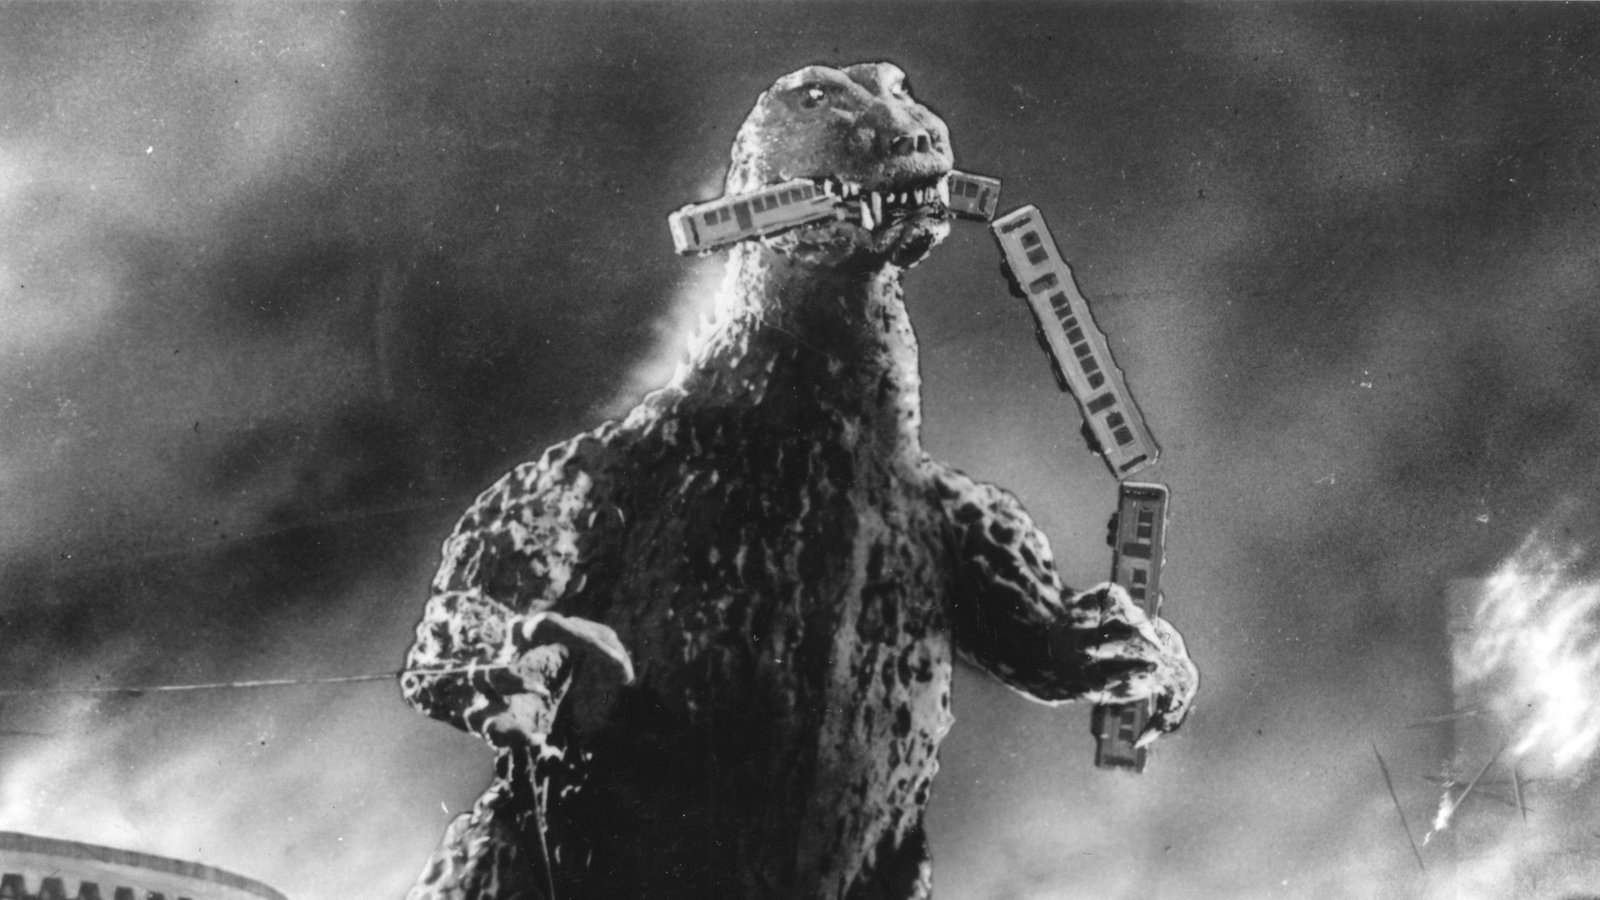 Haruo Nakajima as Godzilla